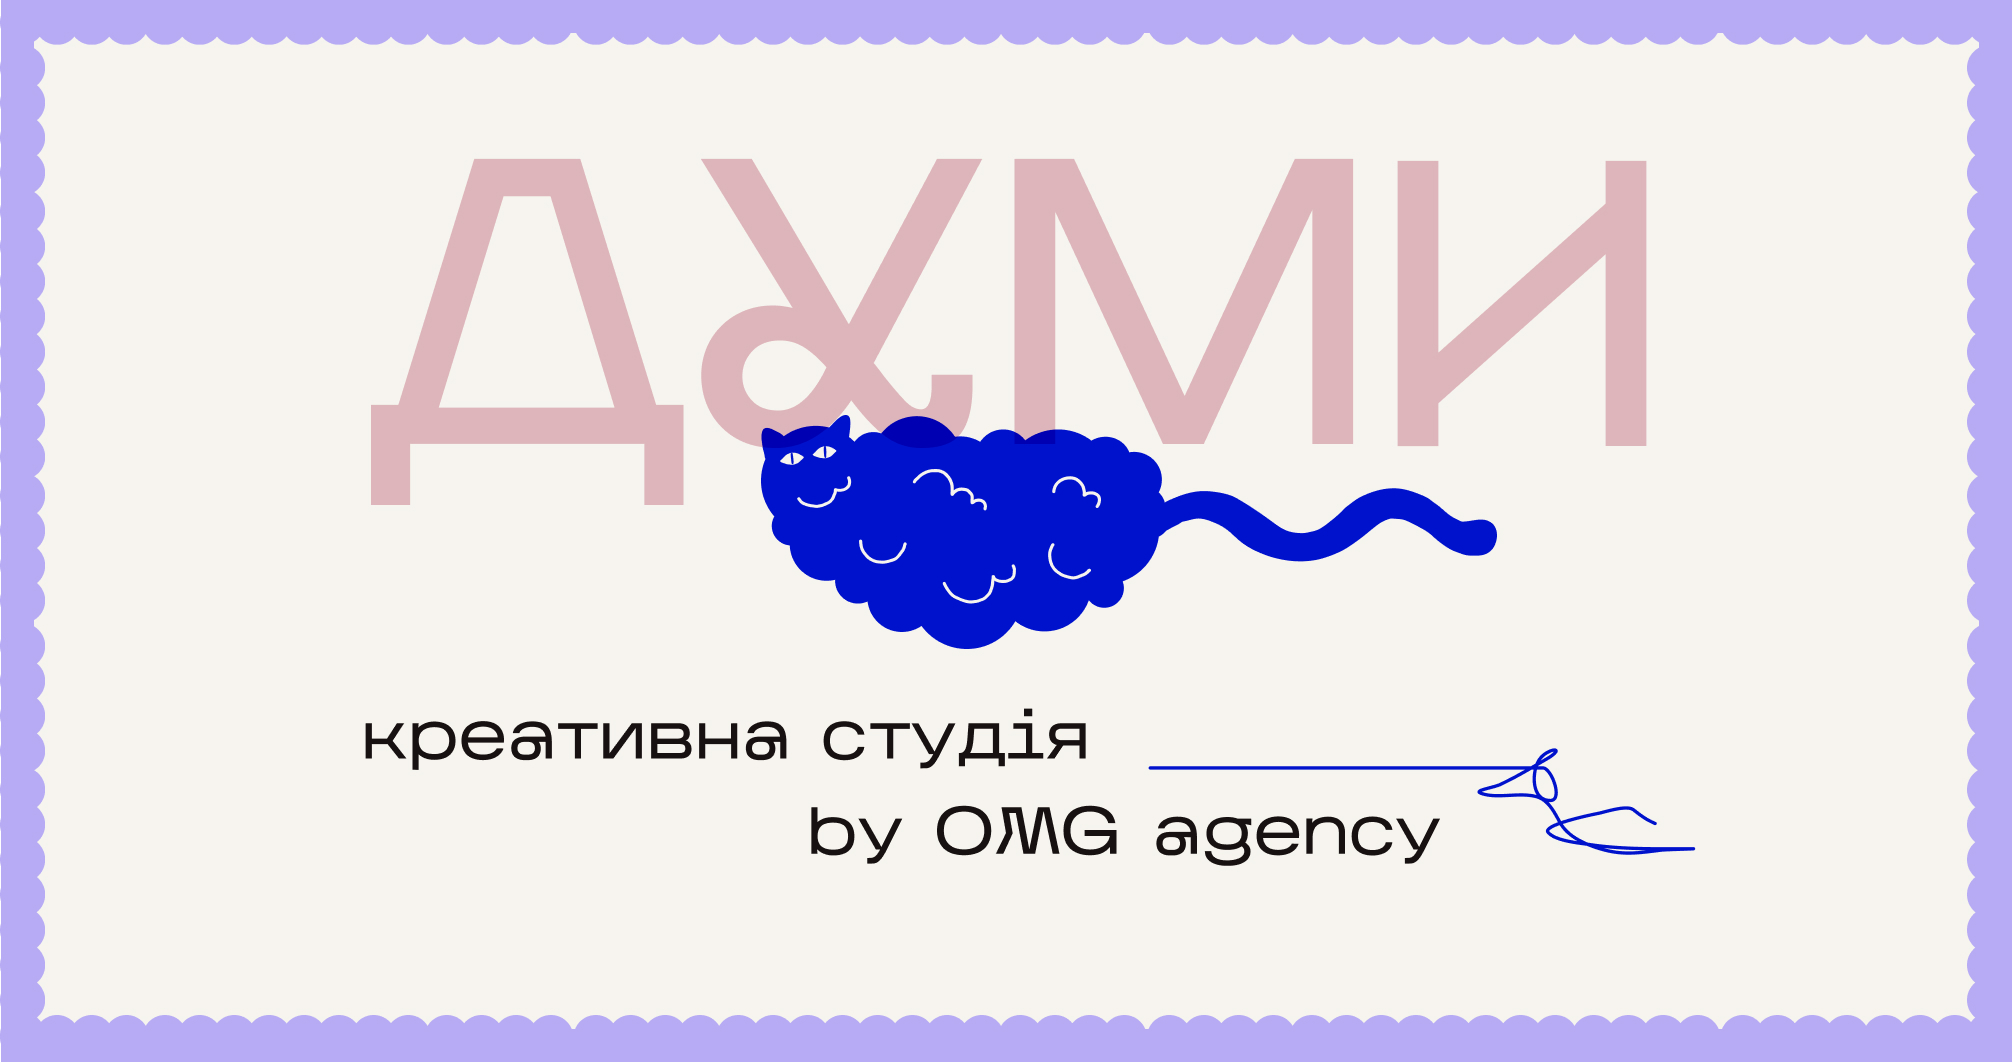 Jak navažytyś na stvorennja kreatyvnoї studiї pid čas vijny — OMG agency pro novu kreatyvnu studiju «Dumy»